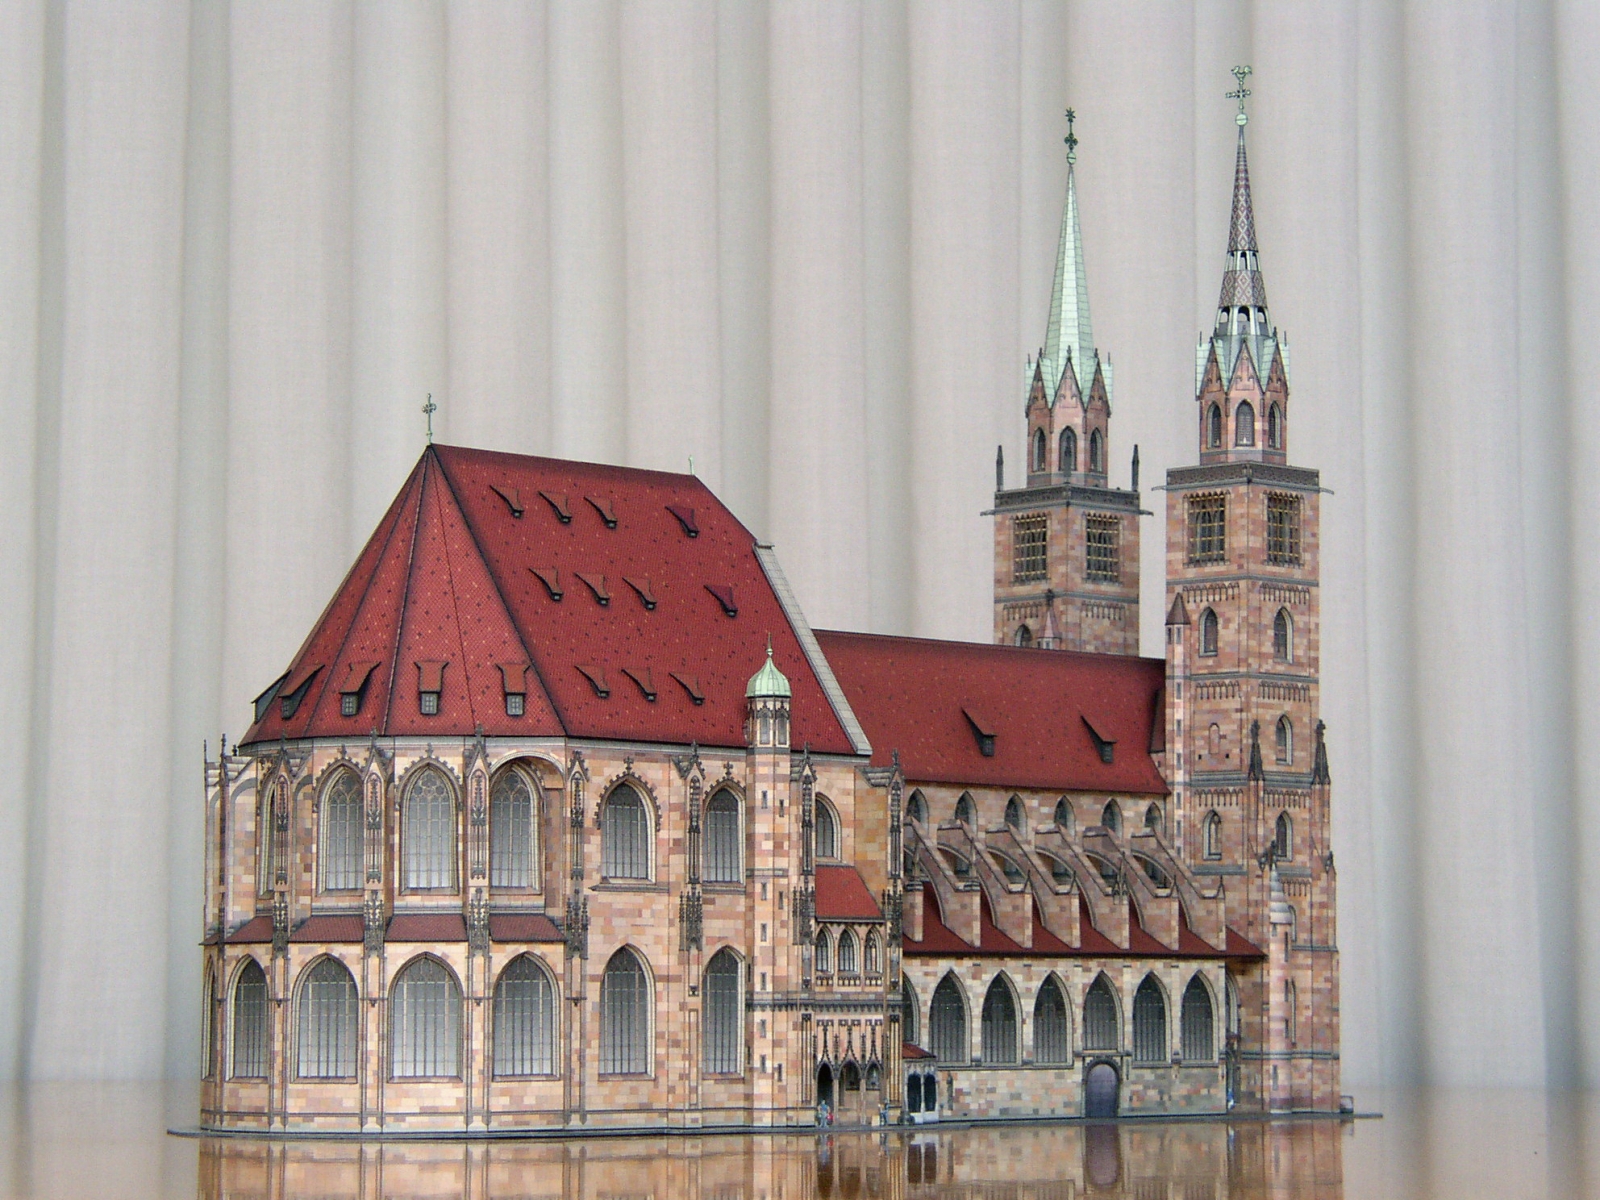  St. Lorenz/Nürnberg – Gotische Hallenchorkirche 1:250 - Seite 2 St.-Lorenz-L04